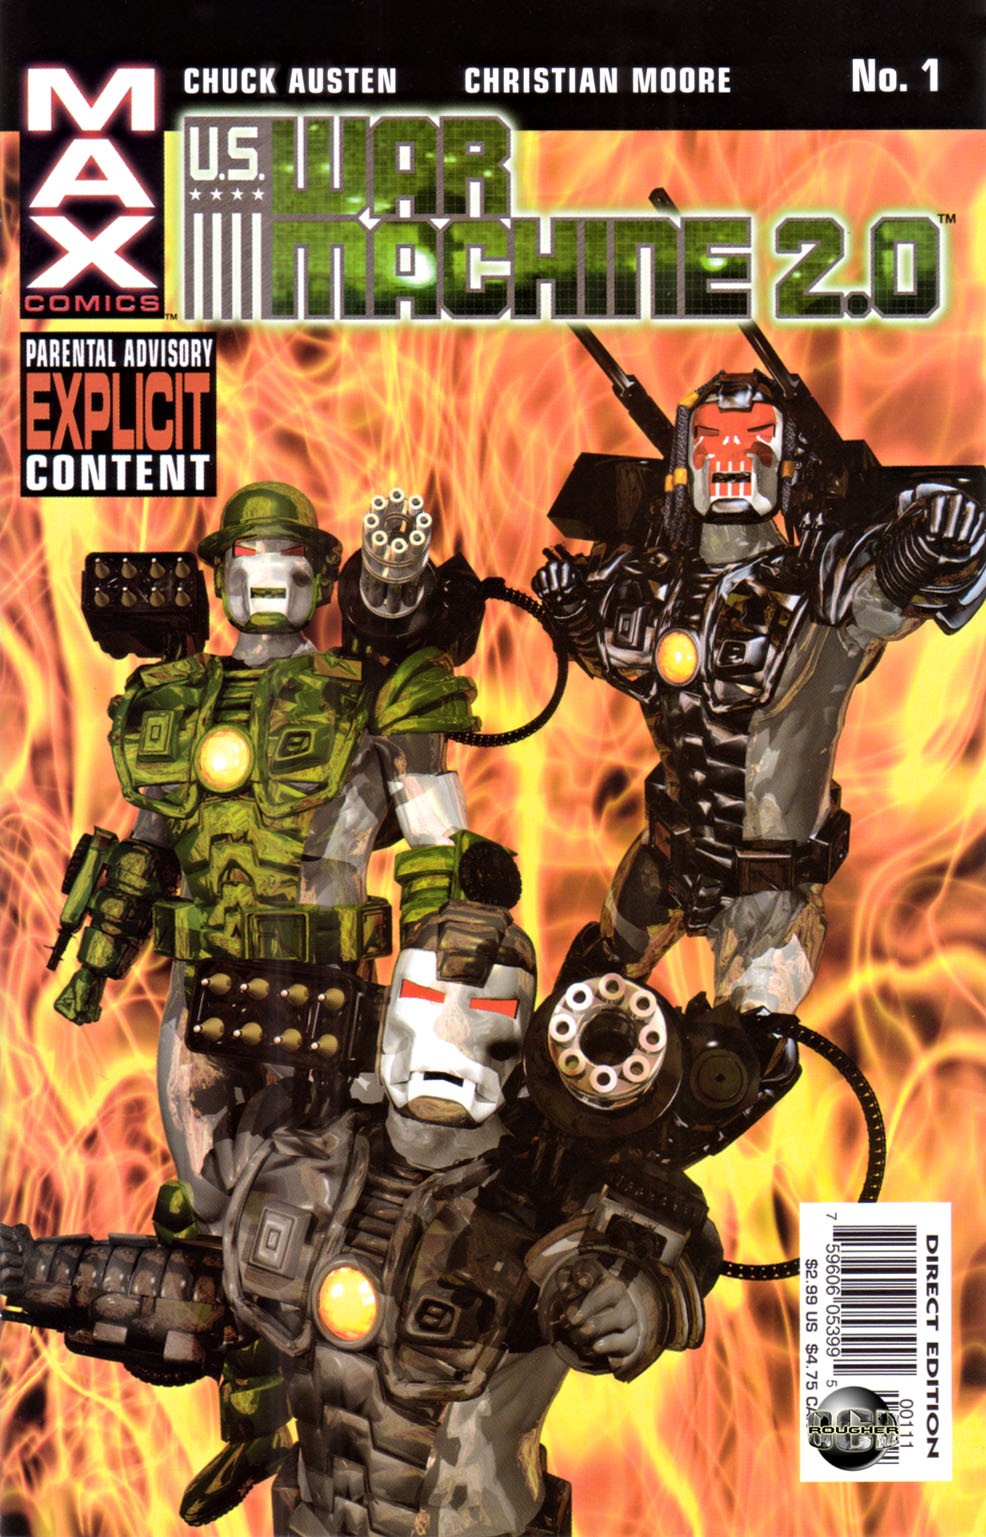 Read online U.S. War Machine 2.0 comic -  Issue #1 - 1